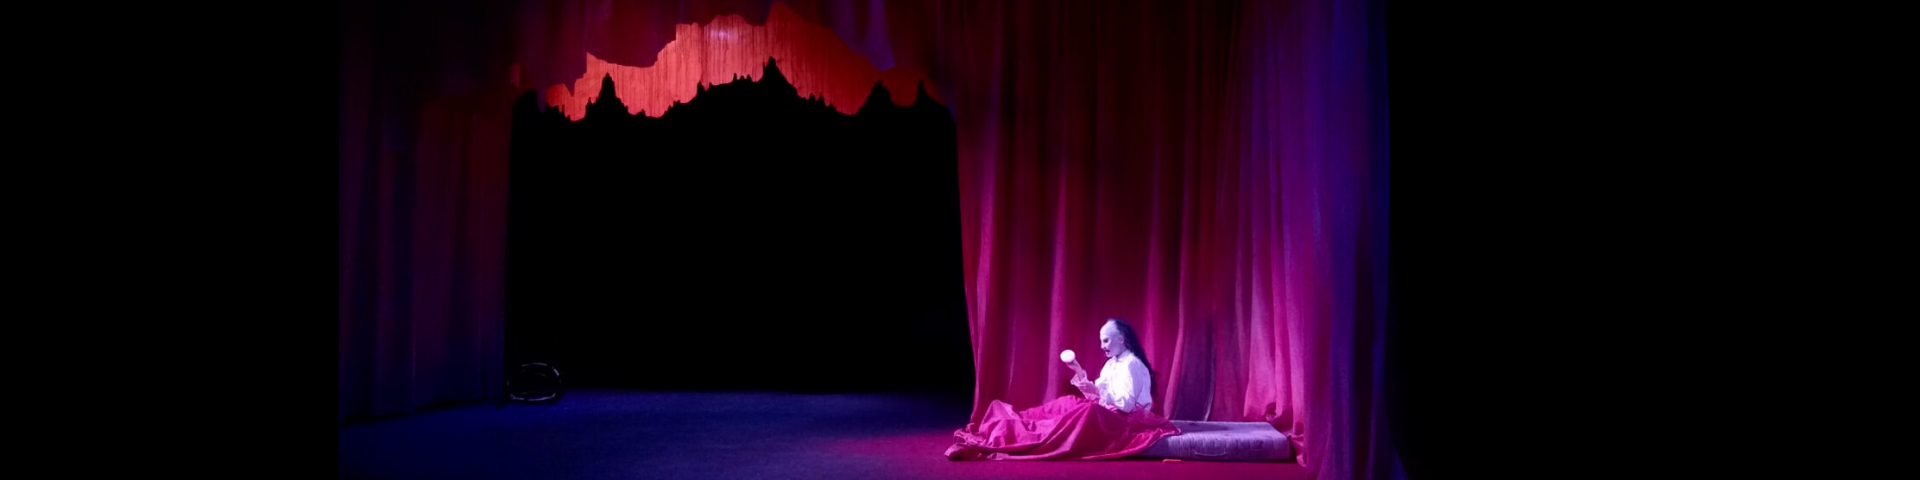 Photo du spectacle de Jeanne Lepers "Le bon fruit mûr" avec le personnage féminin portant un masque et allongée dans un lit devant un rideau rouge.